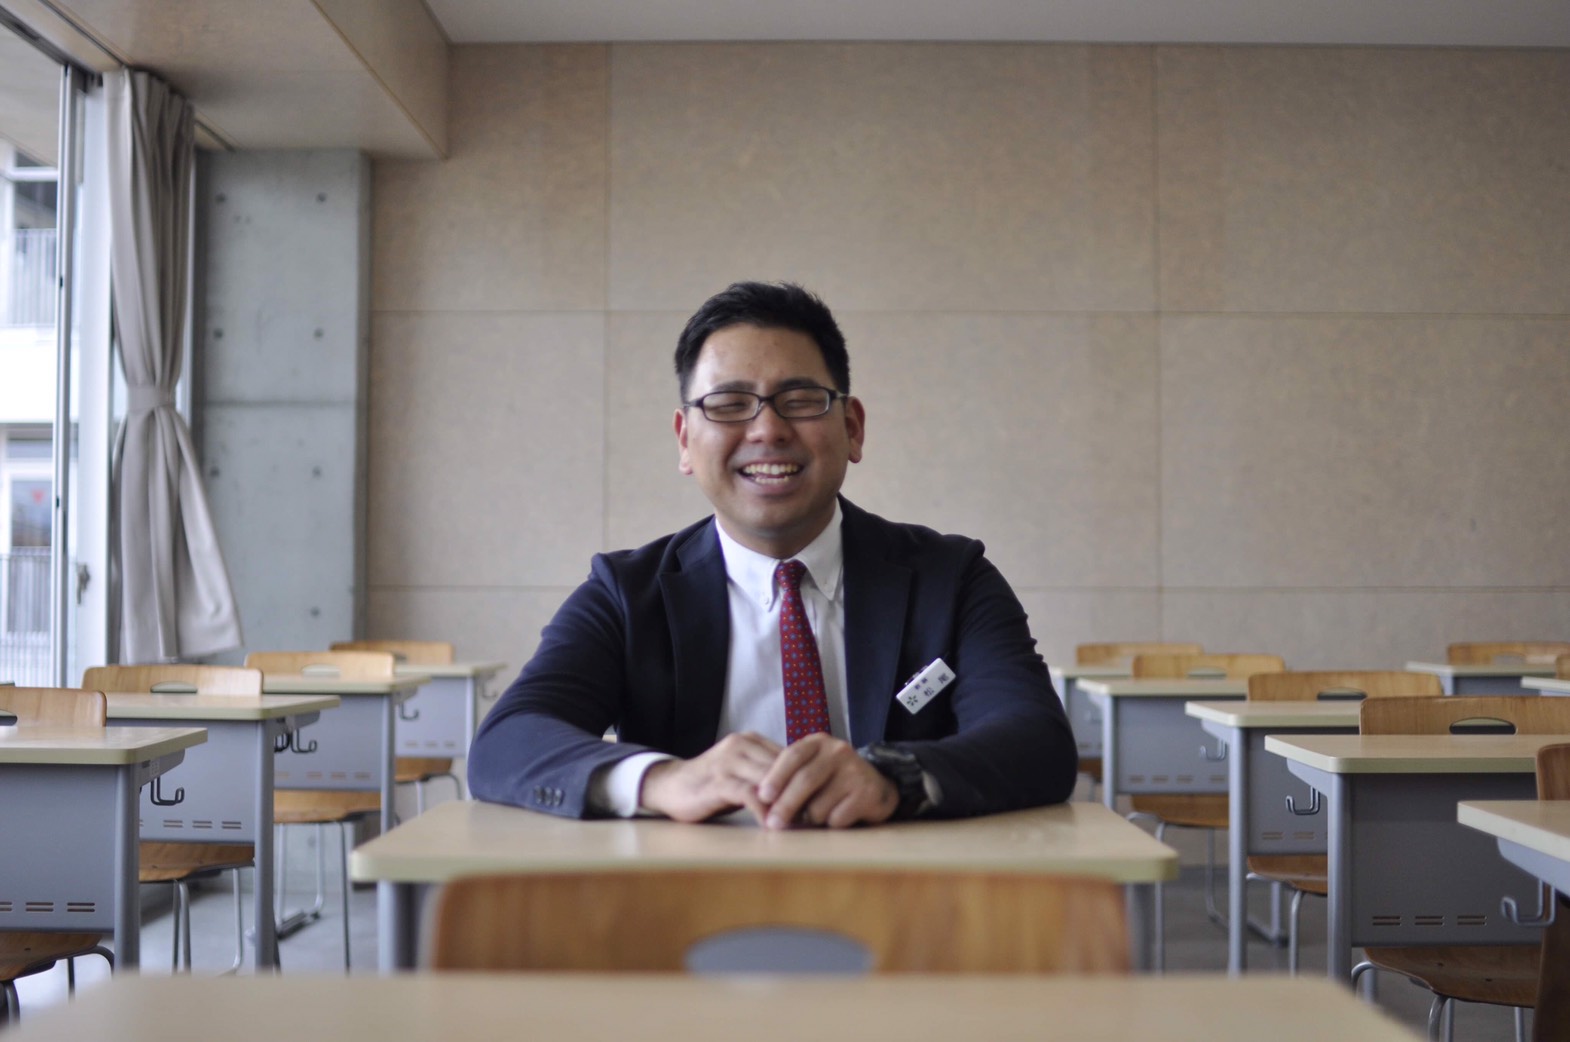 子どもの成長に感動して教員に そして 校長先生になるという夢 Teach For Japan